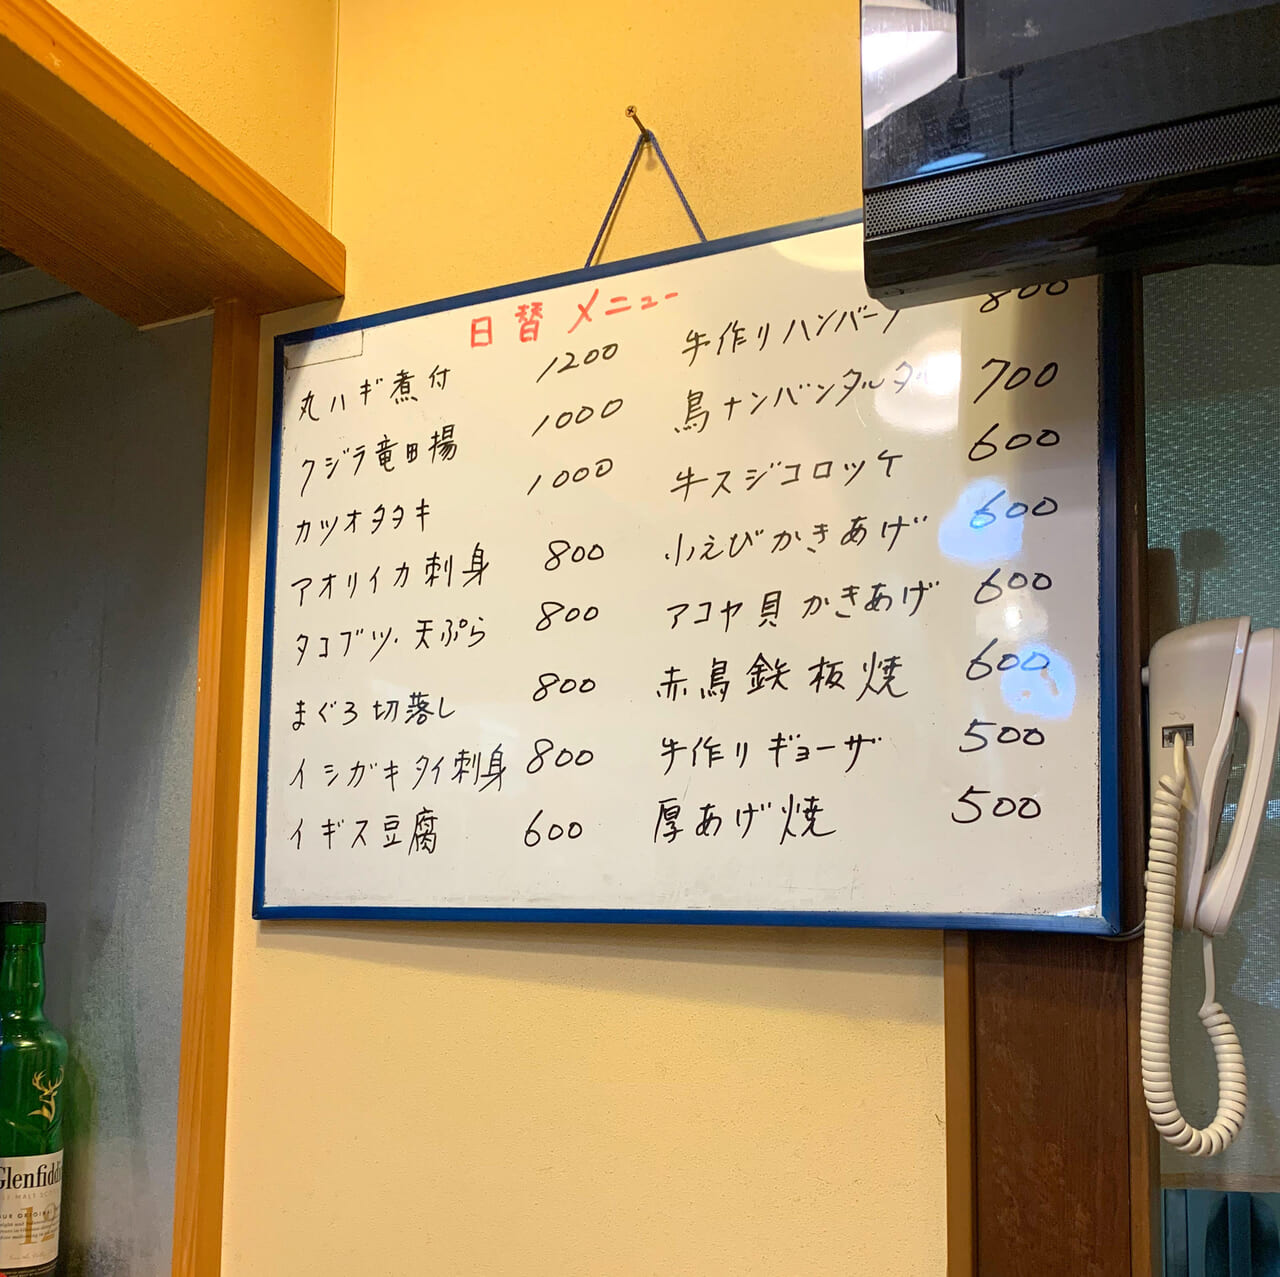 大正町の居酒屋「声聞(せいもん)」では冷凍食品などは一切使用しない女将さんこだわりの美味しい食事をすることができます!!